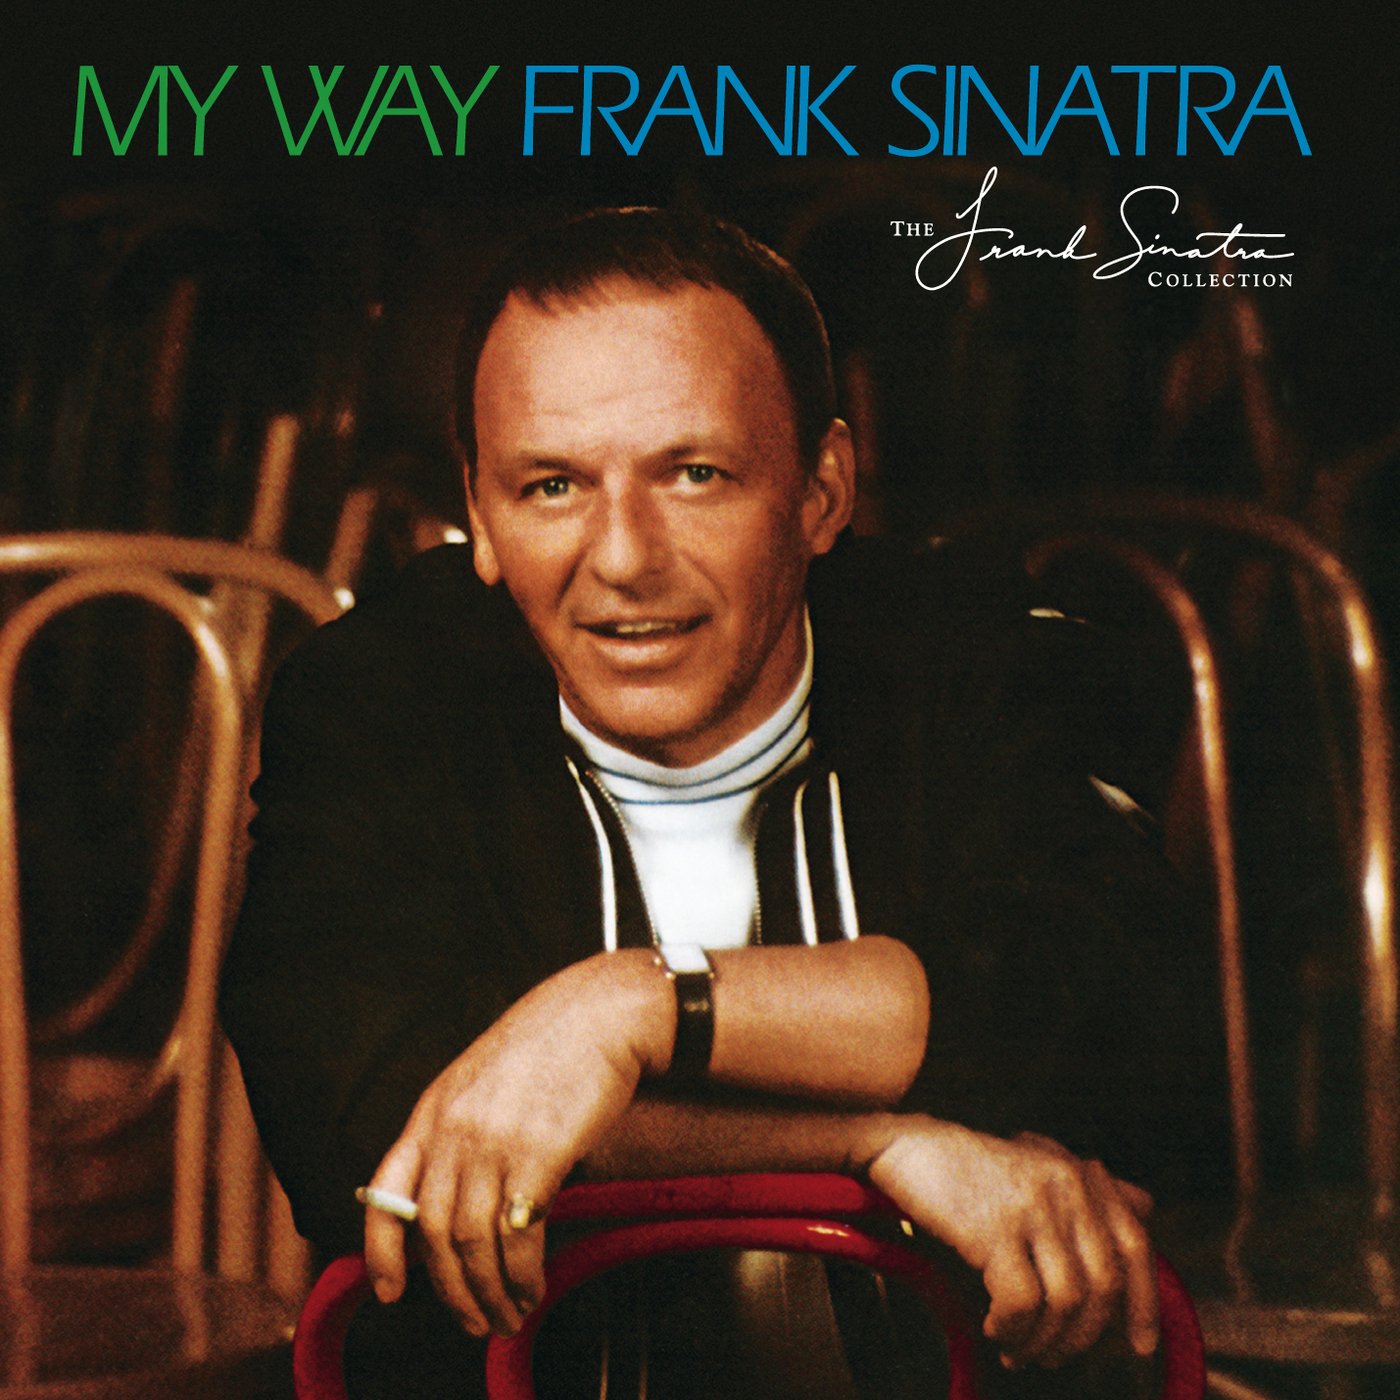 My Way - Vinyl | Frank Sinatra